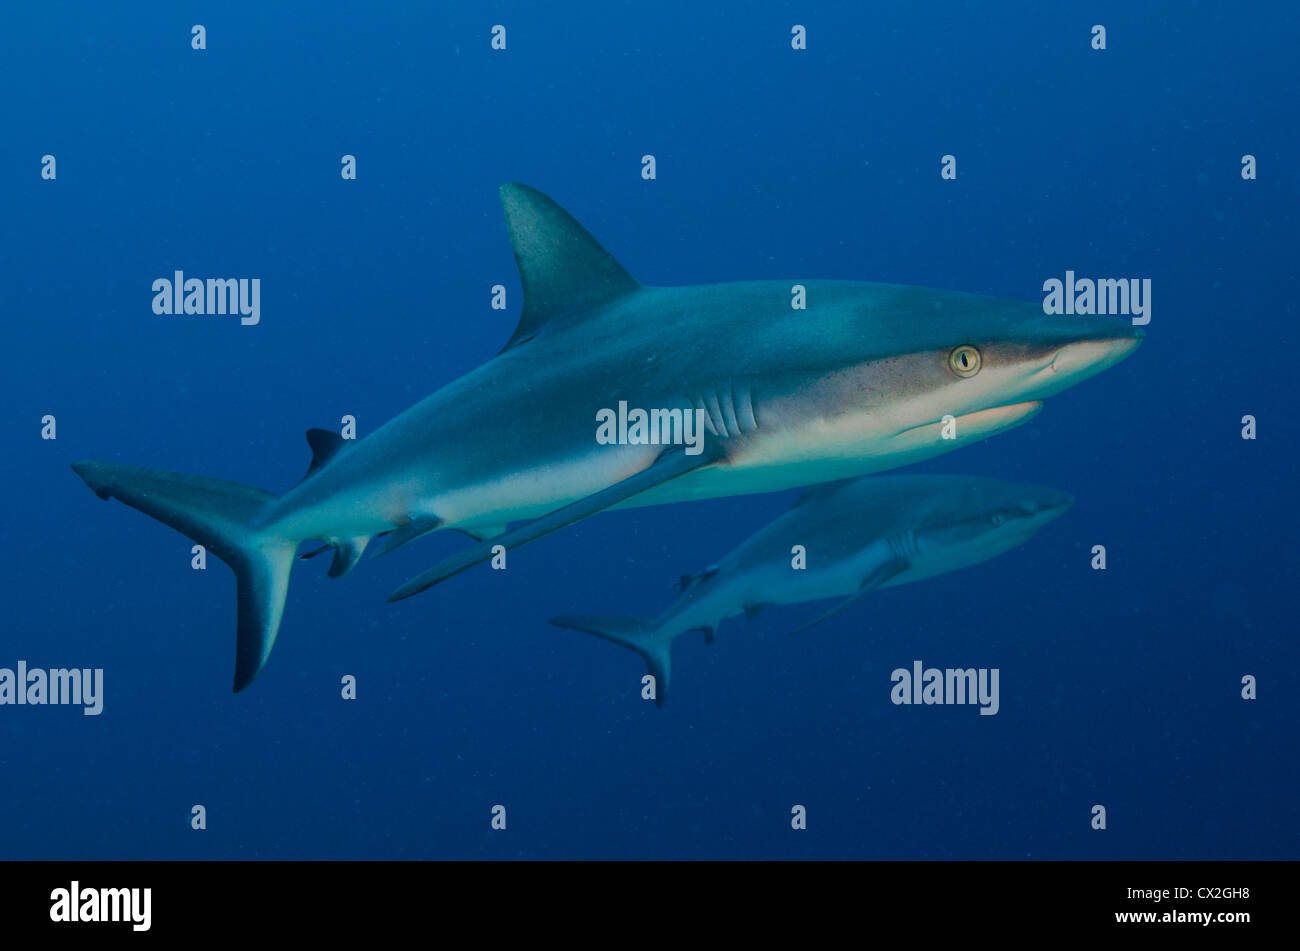 Scena subacquea di Palau, barriere coralline, squali, predator, Grey Reef shark, acqua azzurra, acqua chiara, oceano aperto, mare, scuba. Foto Stock